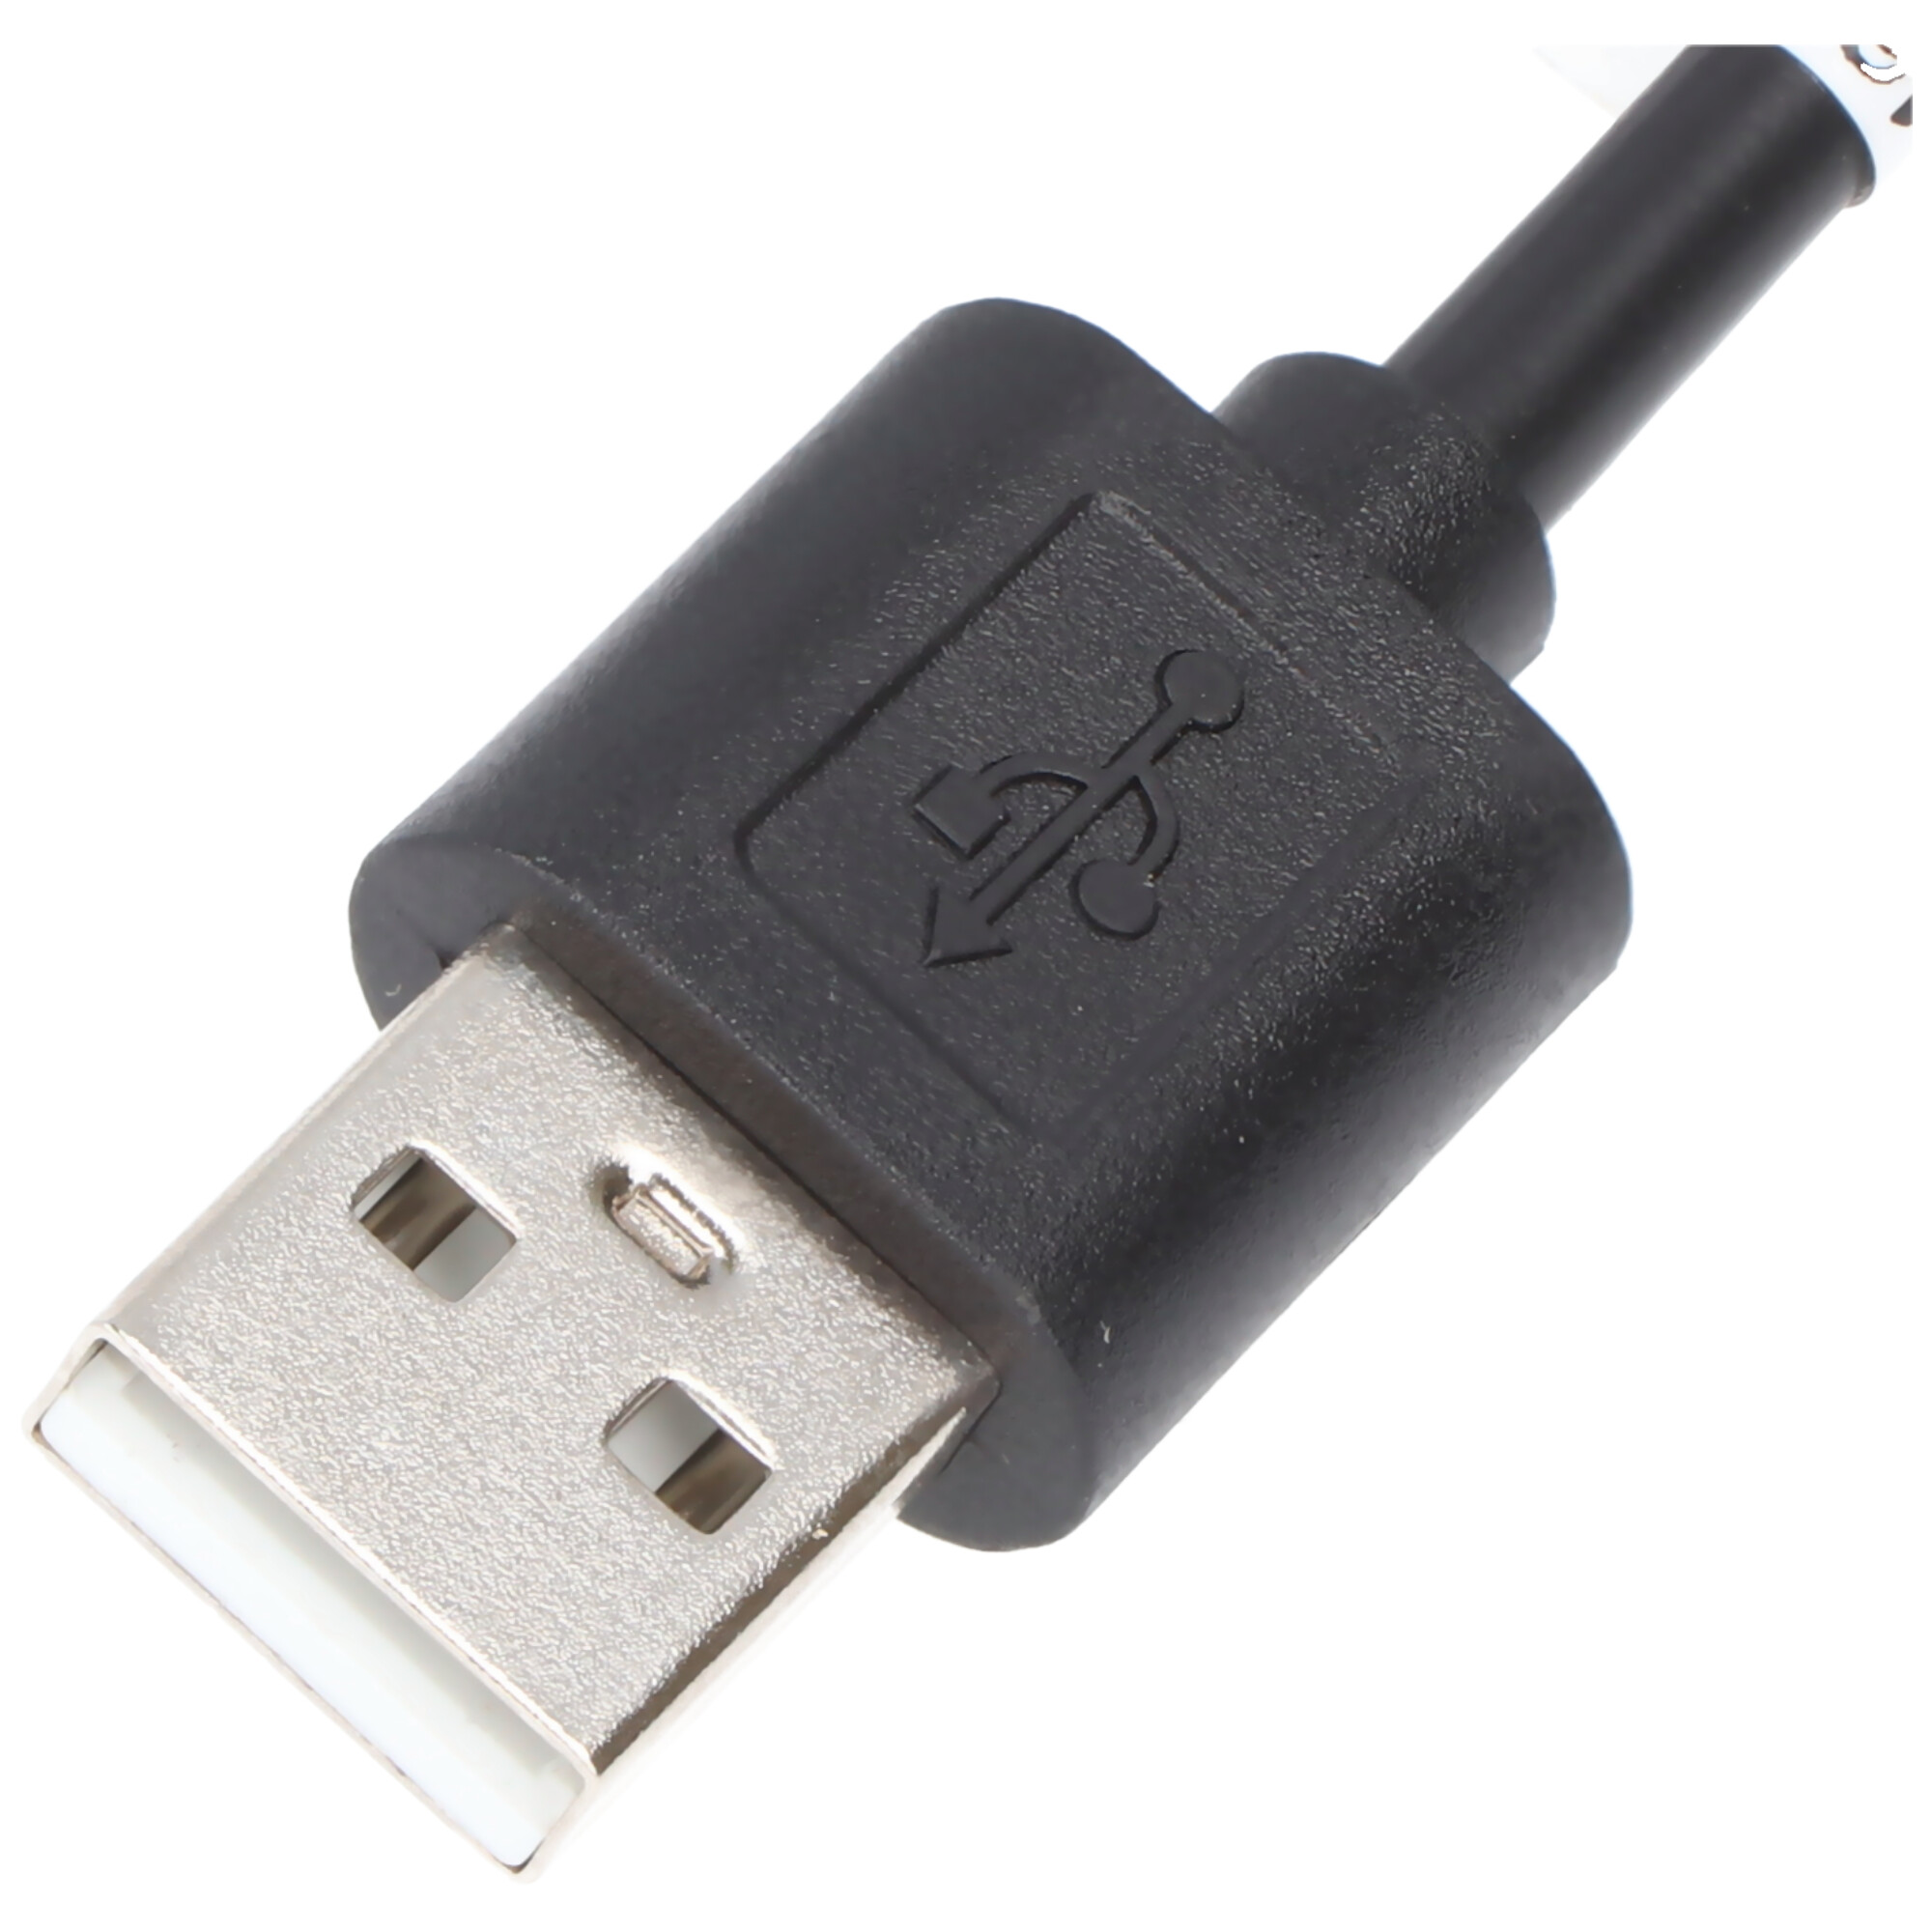 USB 2.0 Kabel USB-C auf USB A, schwarz geeignet für Geräte mit USB-C Anschluss